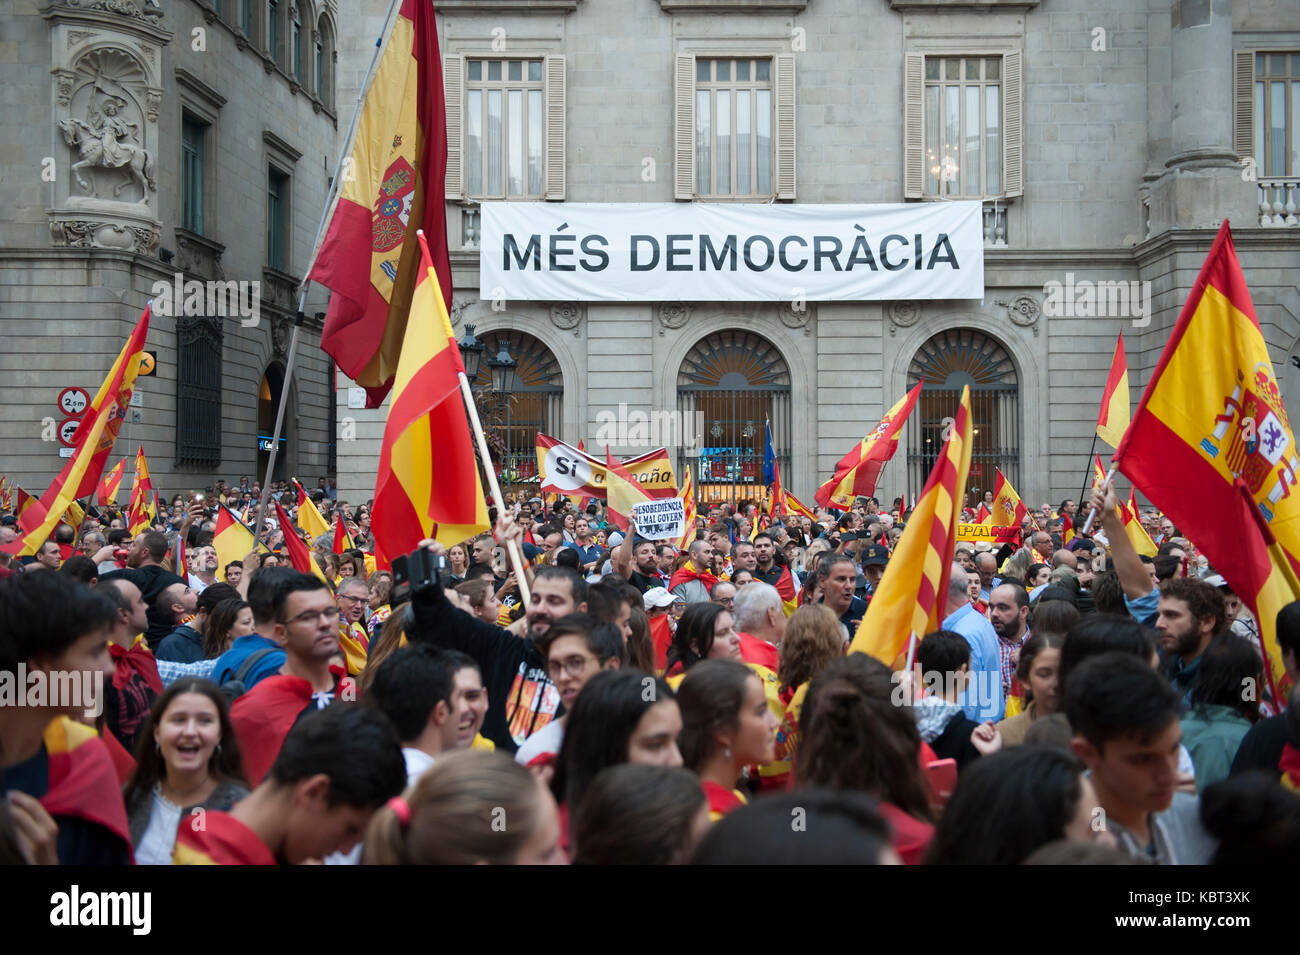 Miles de manifestantes tomaron las calles de Barcelona para expresar su indignación por el referéndum de independencia de Cataluña que llevará a cabo el 1 de octubre. Foto de stock